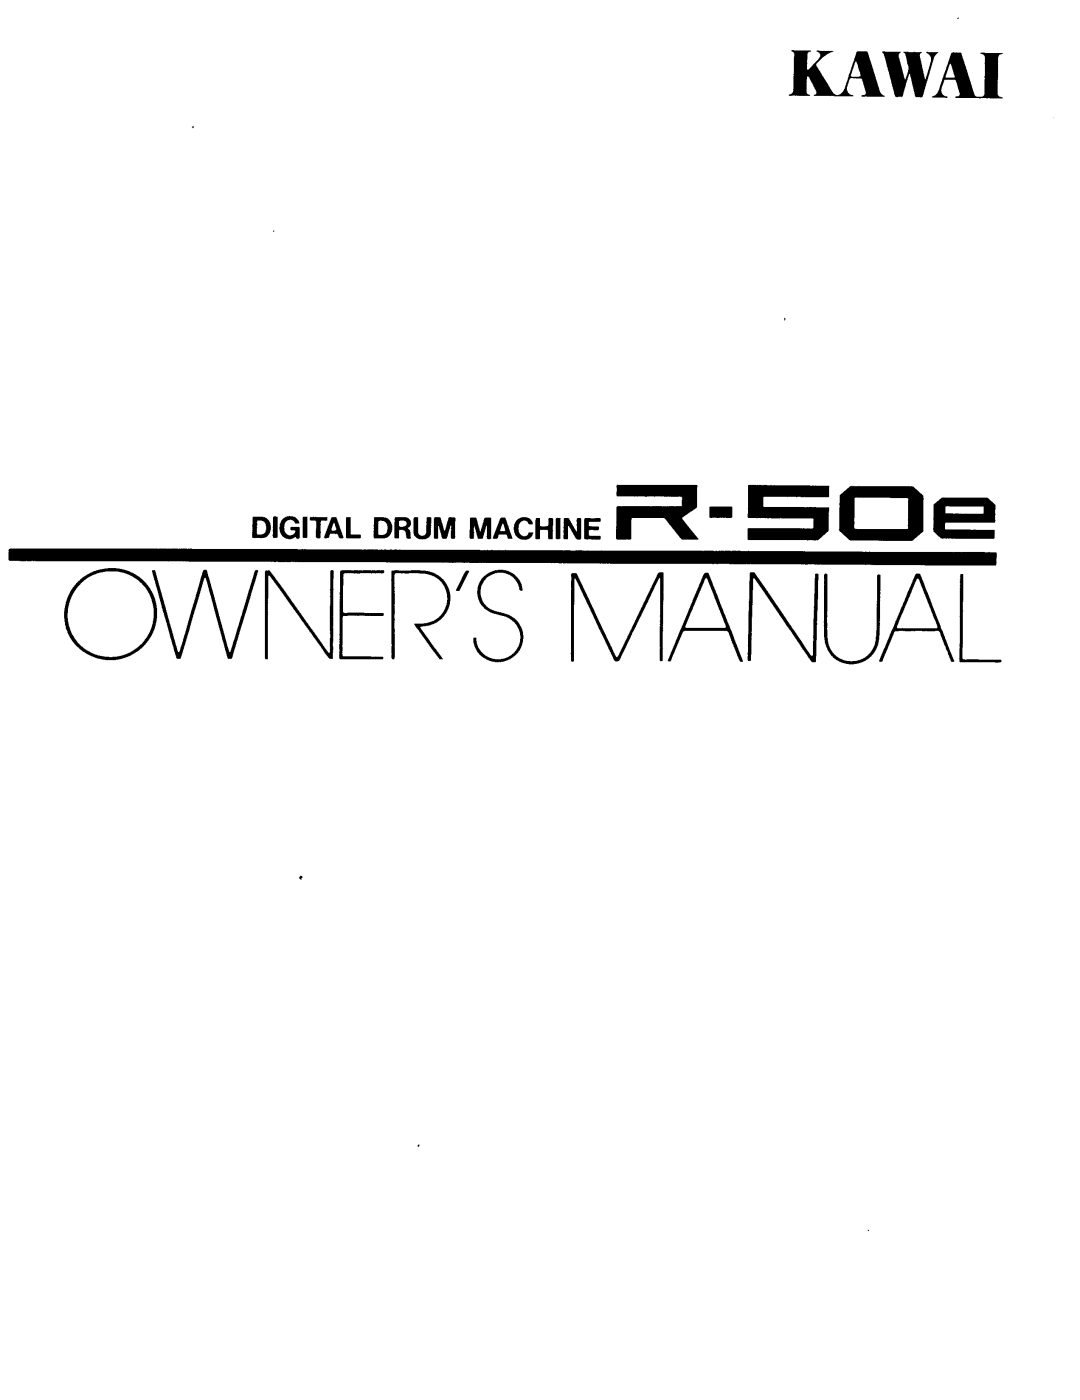 Kawai R-50e manual 